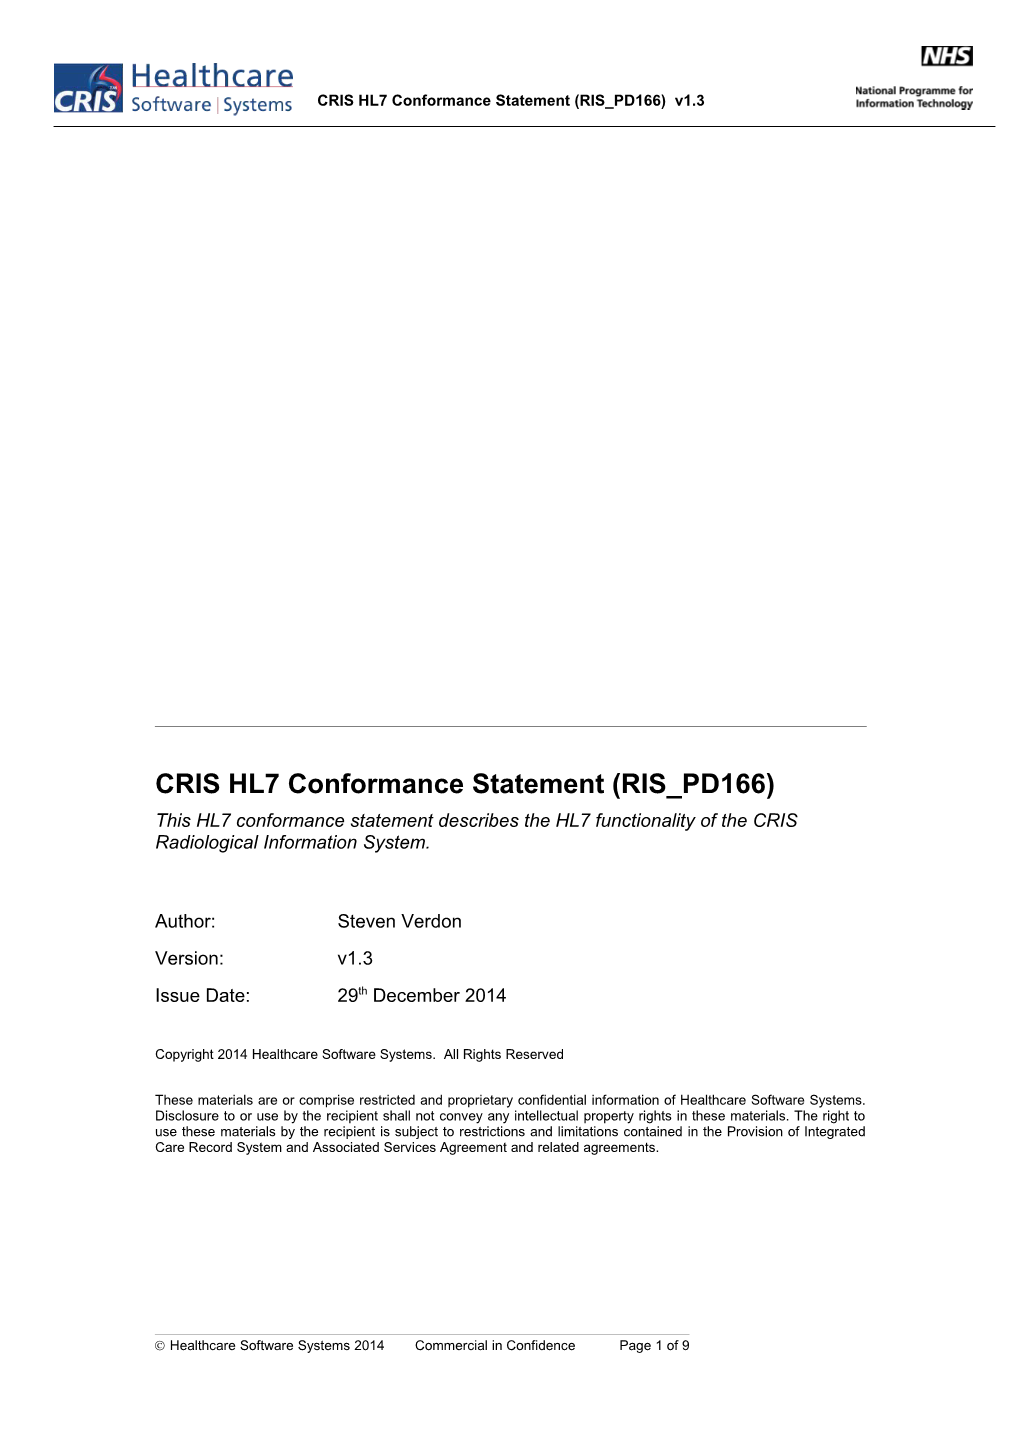 CRIS HL7 Conformance Statement (RIS PD166)